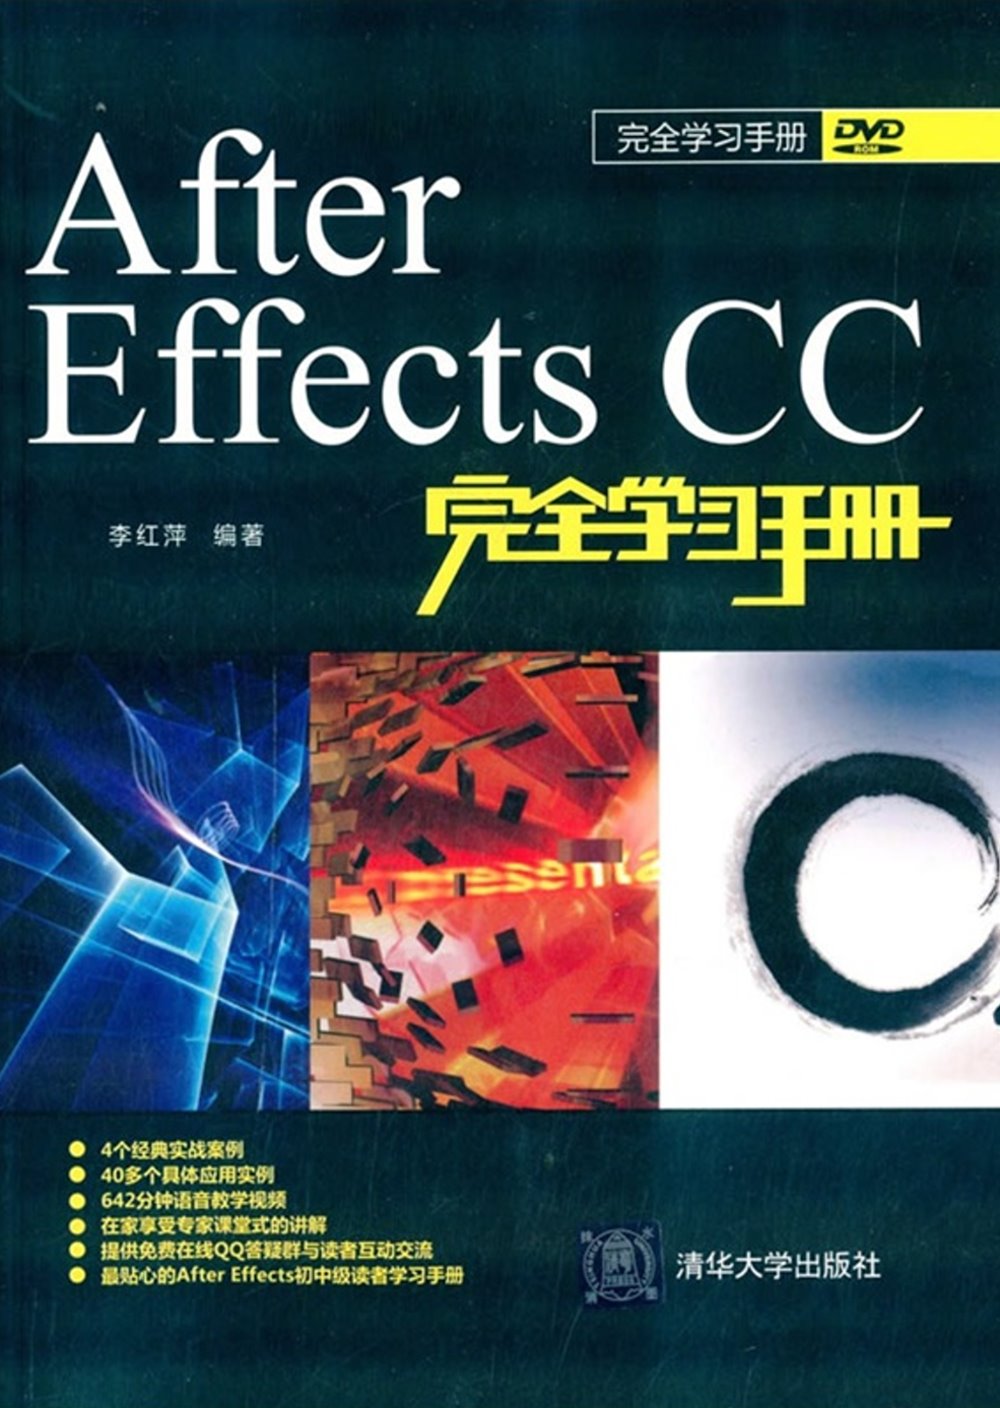 After Effects CC完全學習手冊